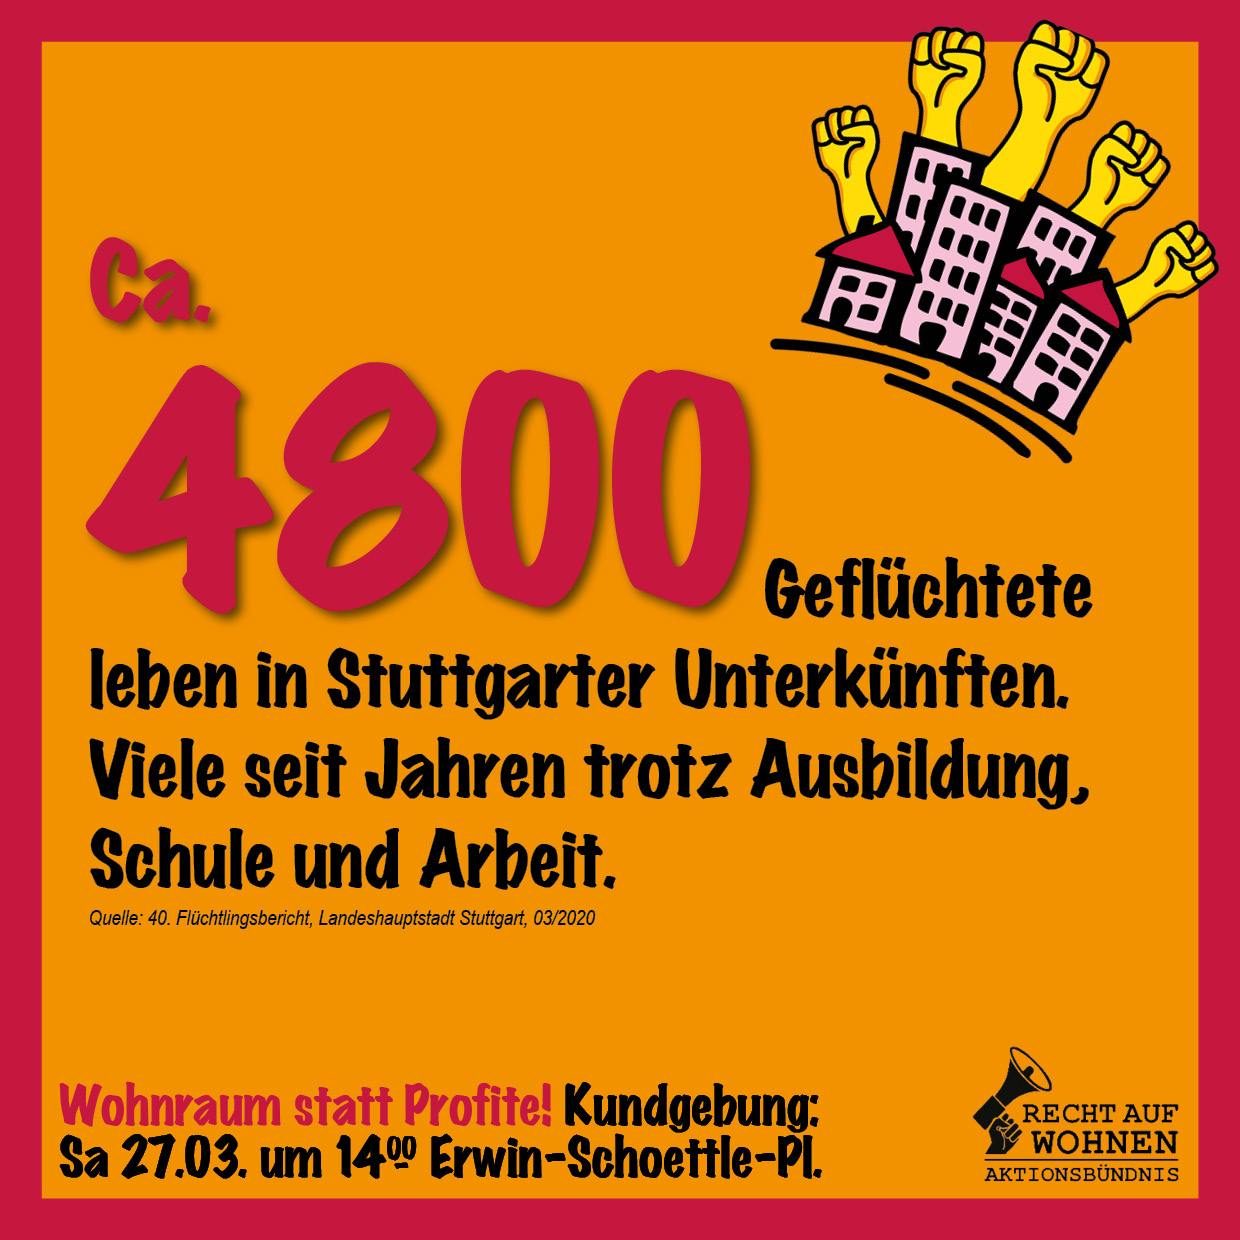 Stuttgart: 4800 Geflüchtete in Unterkünften